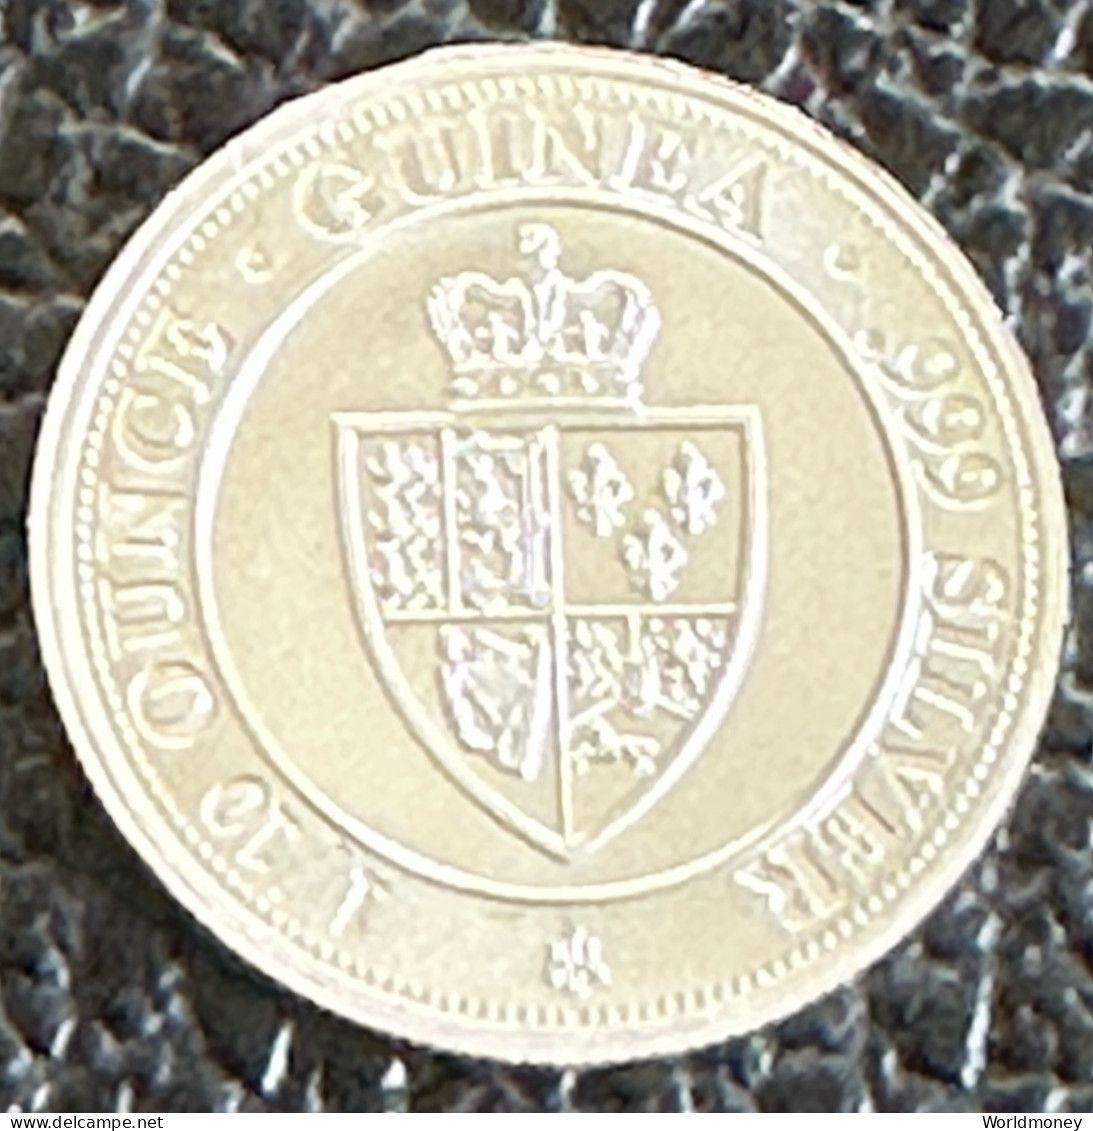 Saint Helena 10 Pence 2020  -  1/10 Oz Spade Guinea Shield (Silver) - Sint-Helena